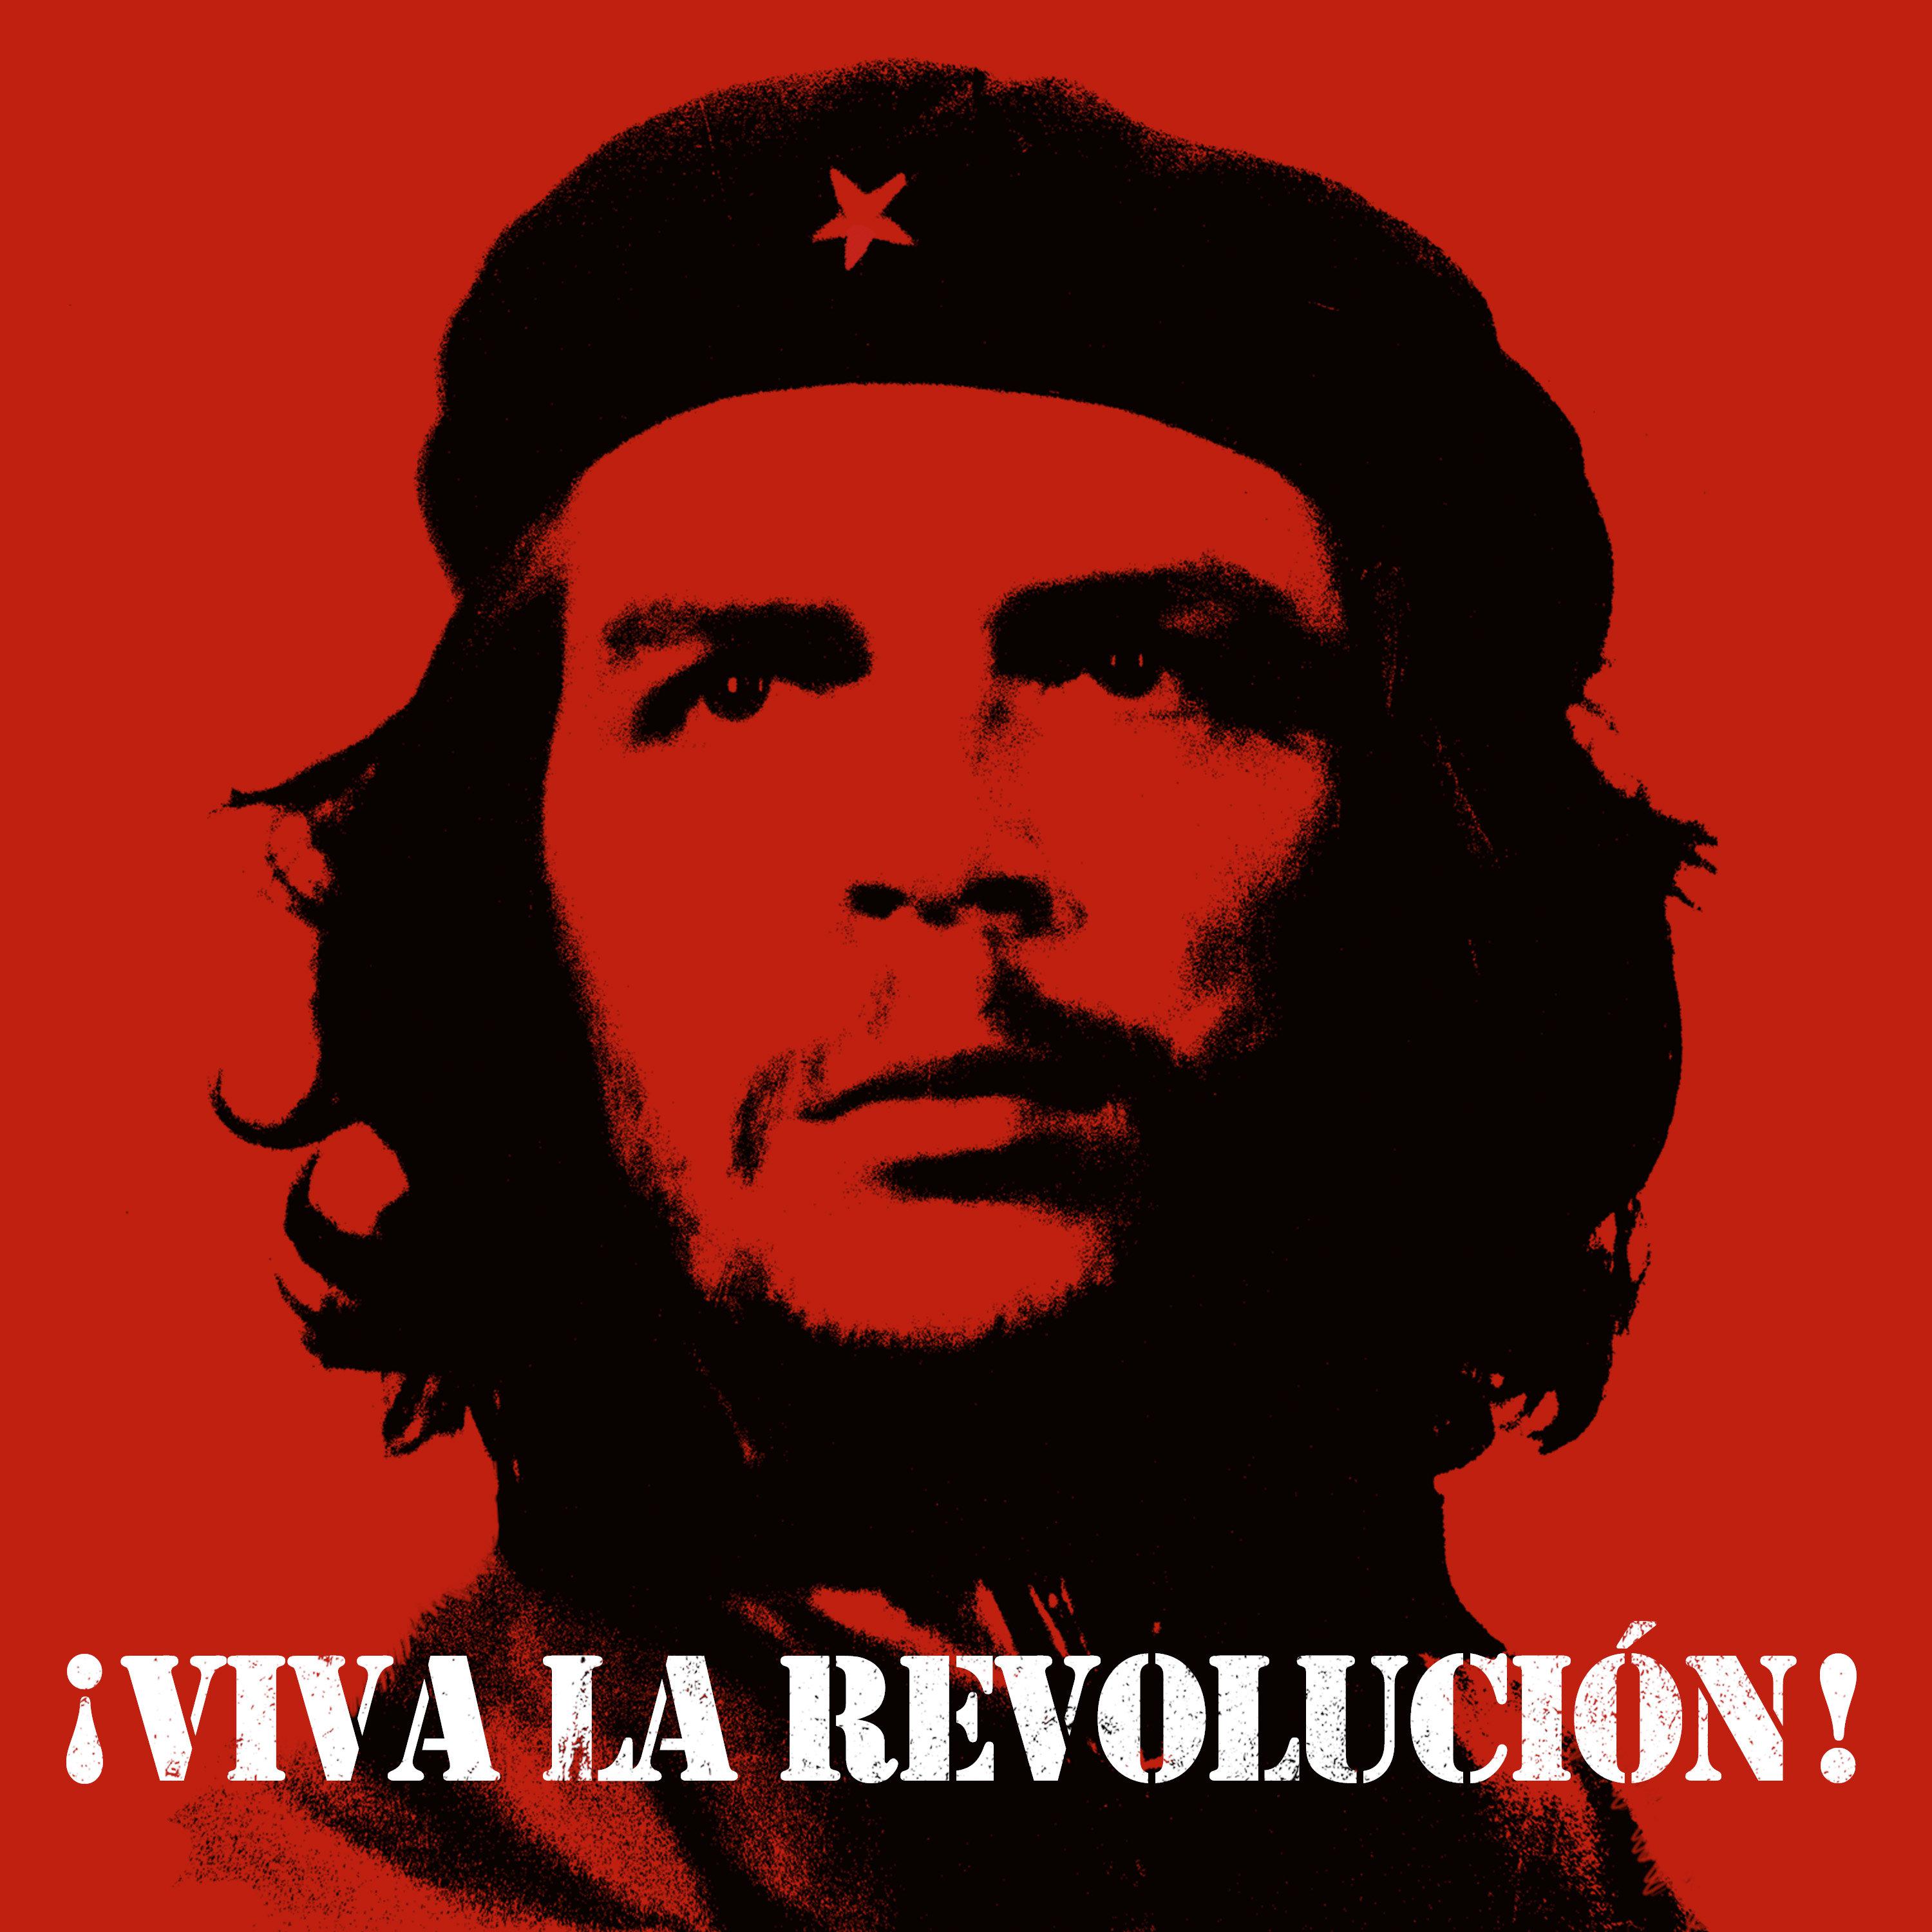 Respeto Al Che Guevara